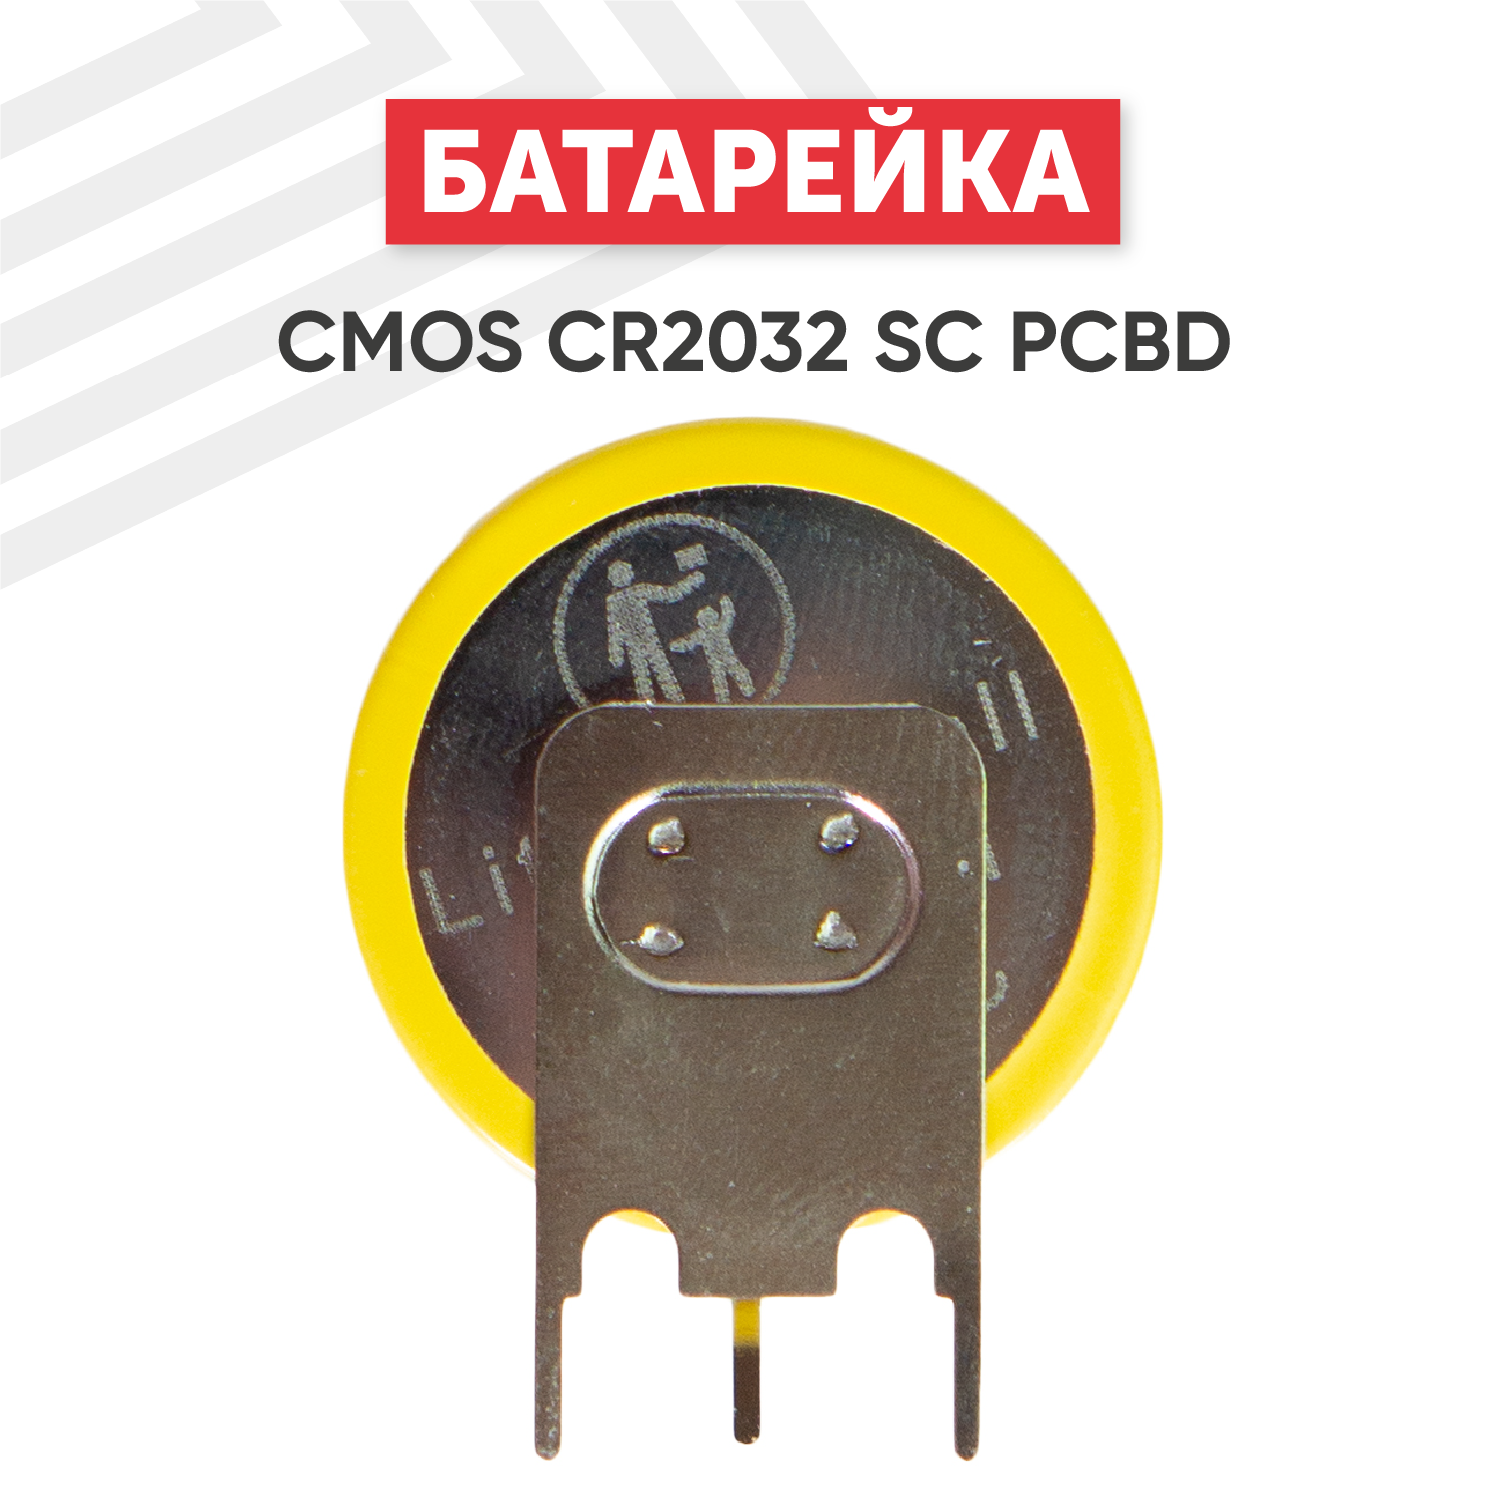 Батарейка (элемент питания, таблетка) CMOS CR2032 SC PCBD / CR 2032 SC PCBD, 3В, 210мАч для часов, игрушек, сигнализации, фонарей, брелоков